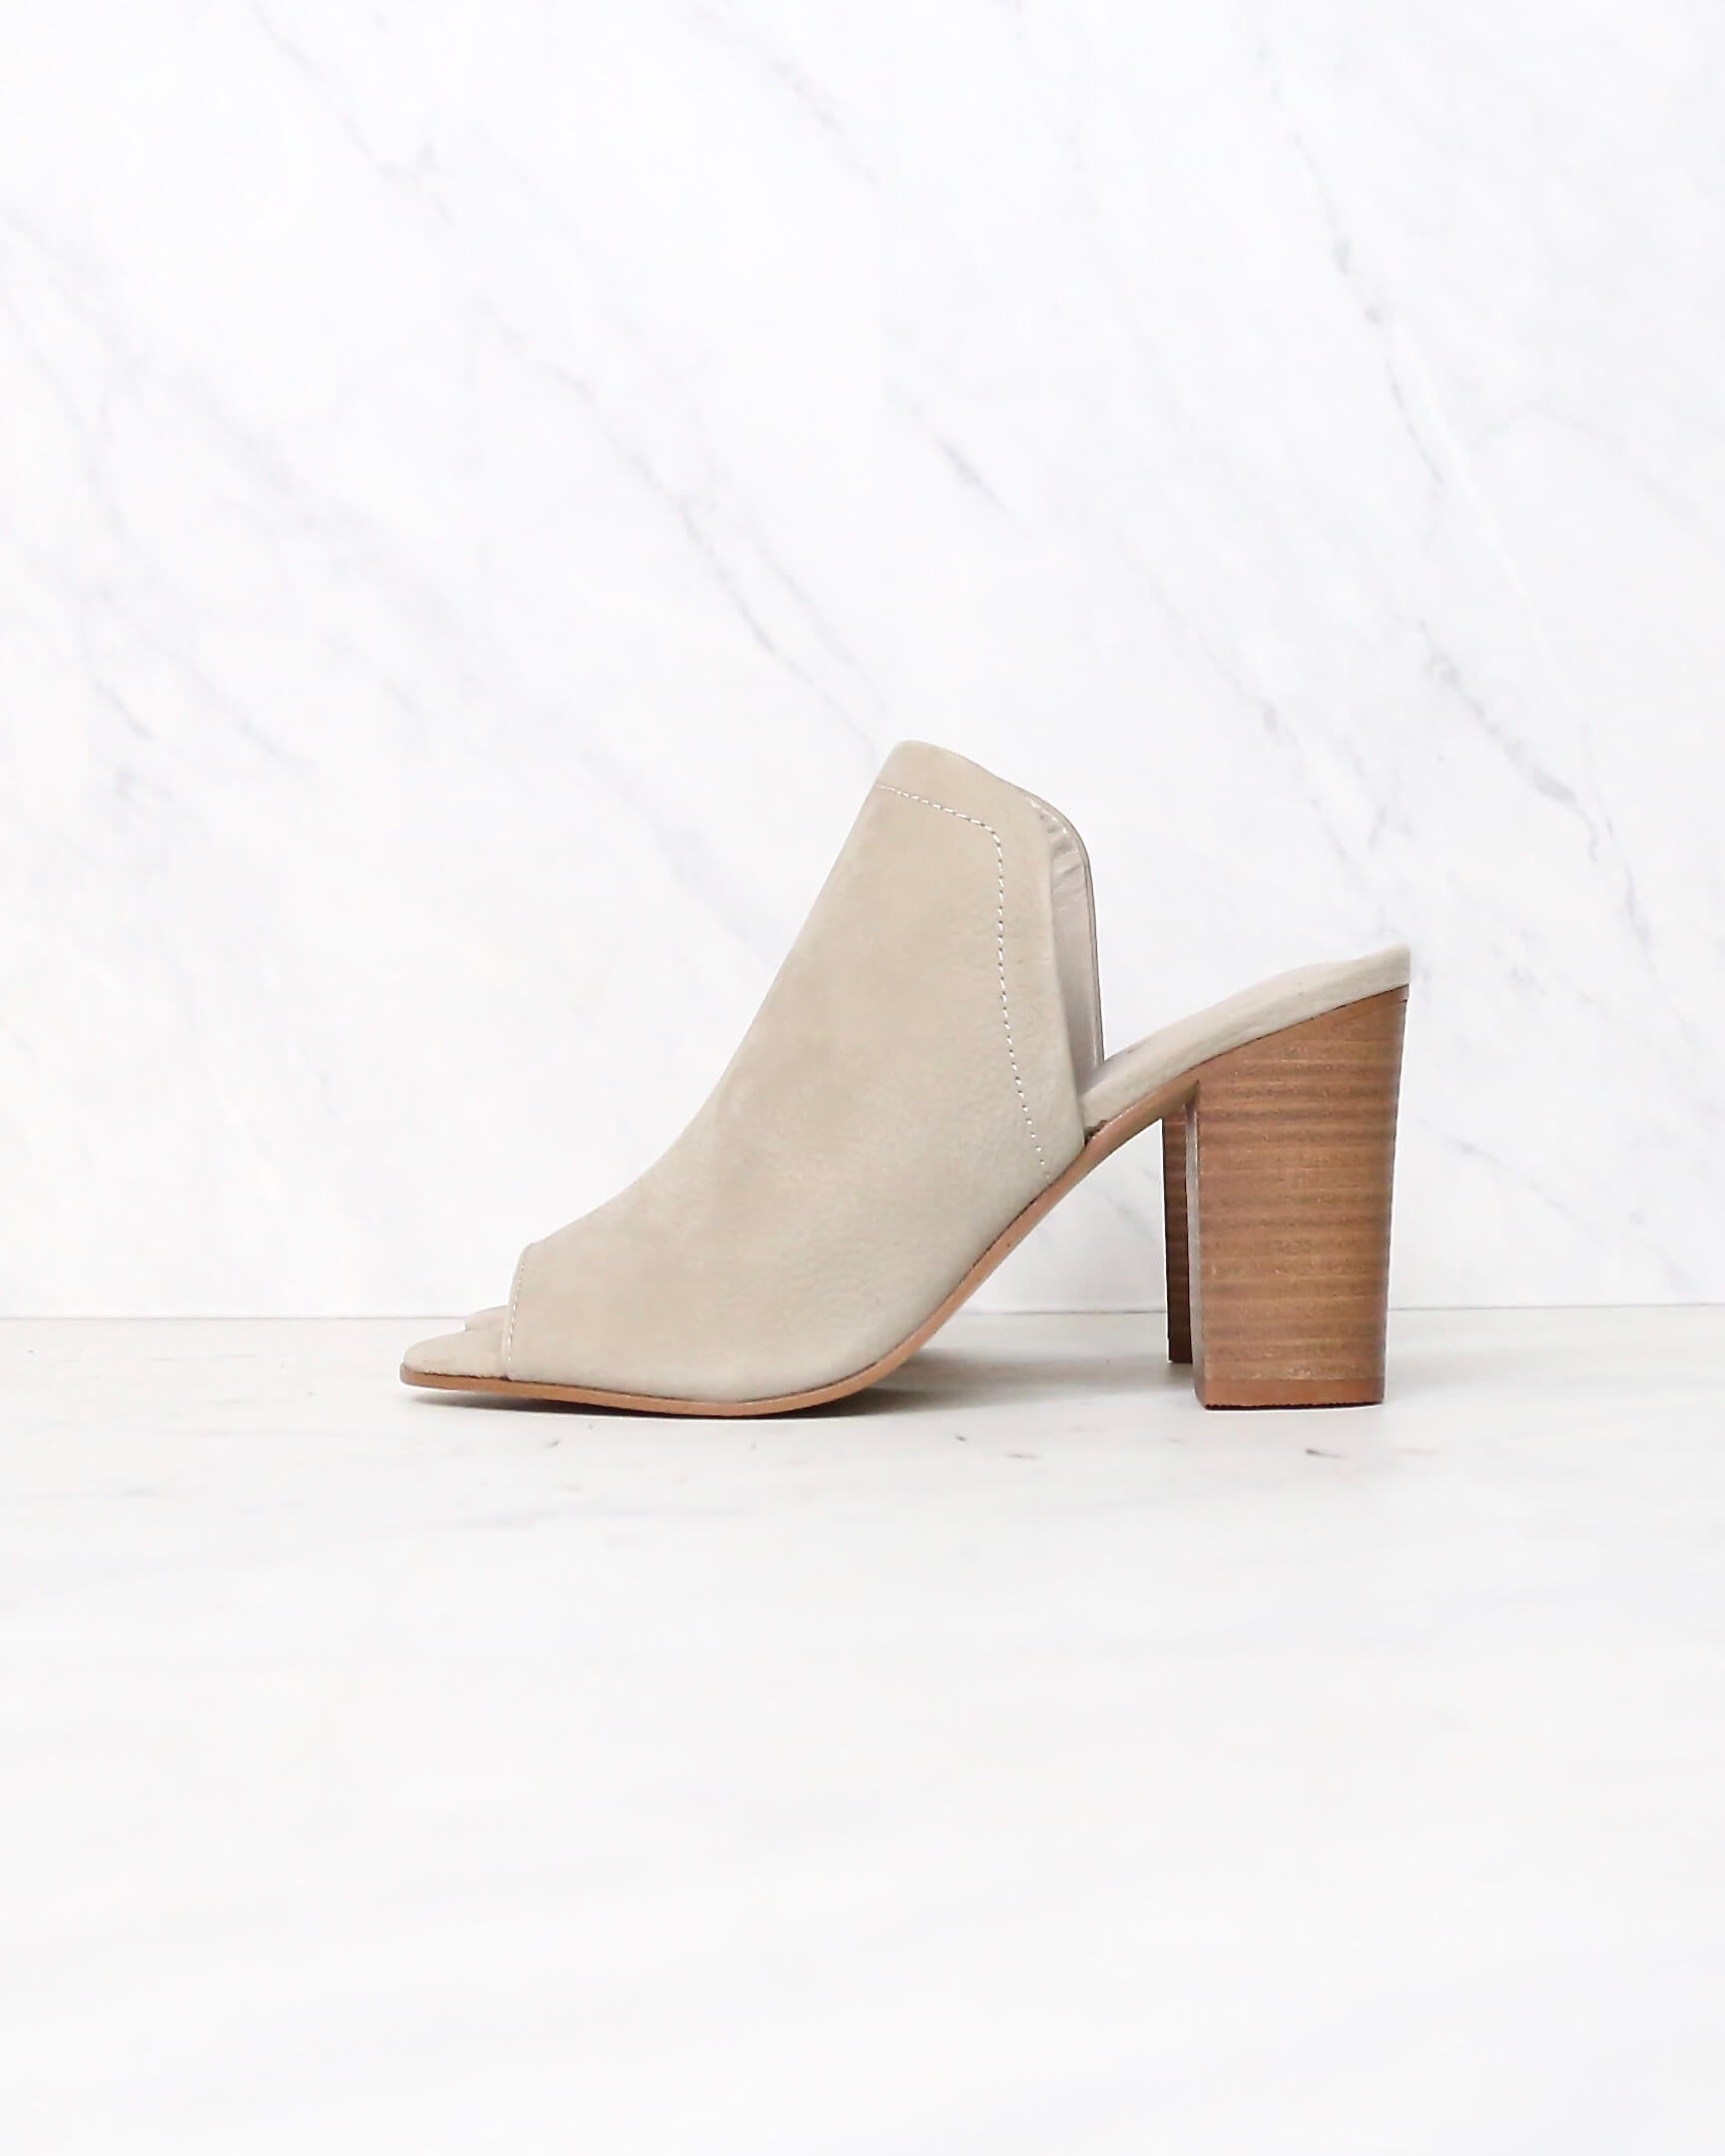 grey mules heels